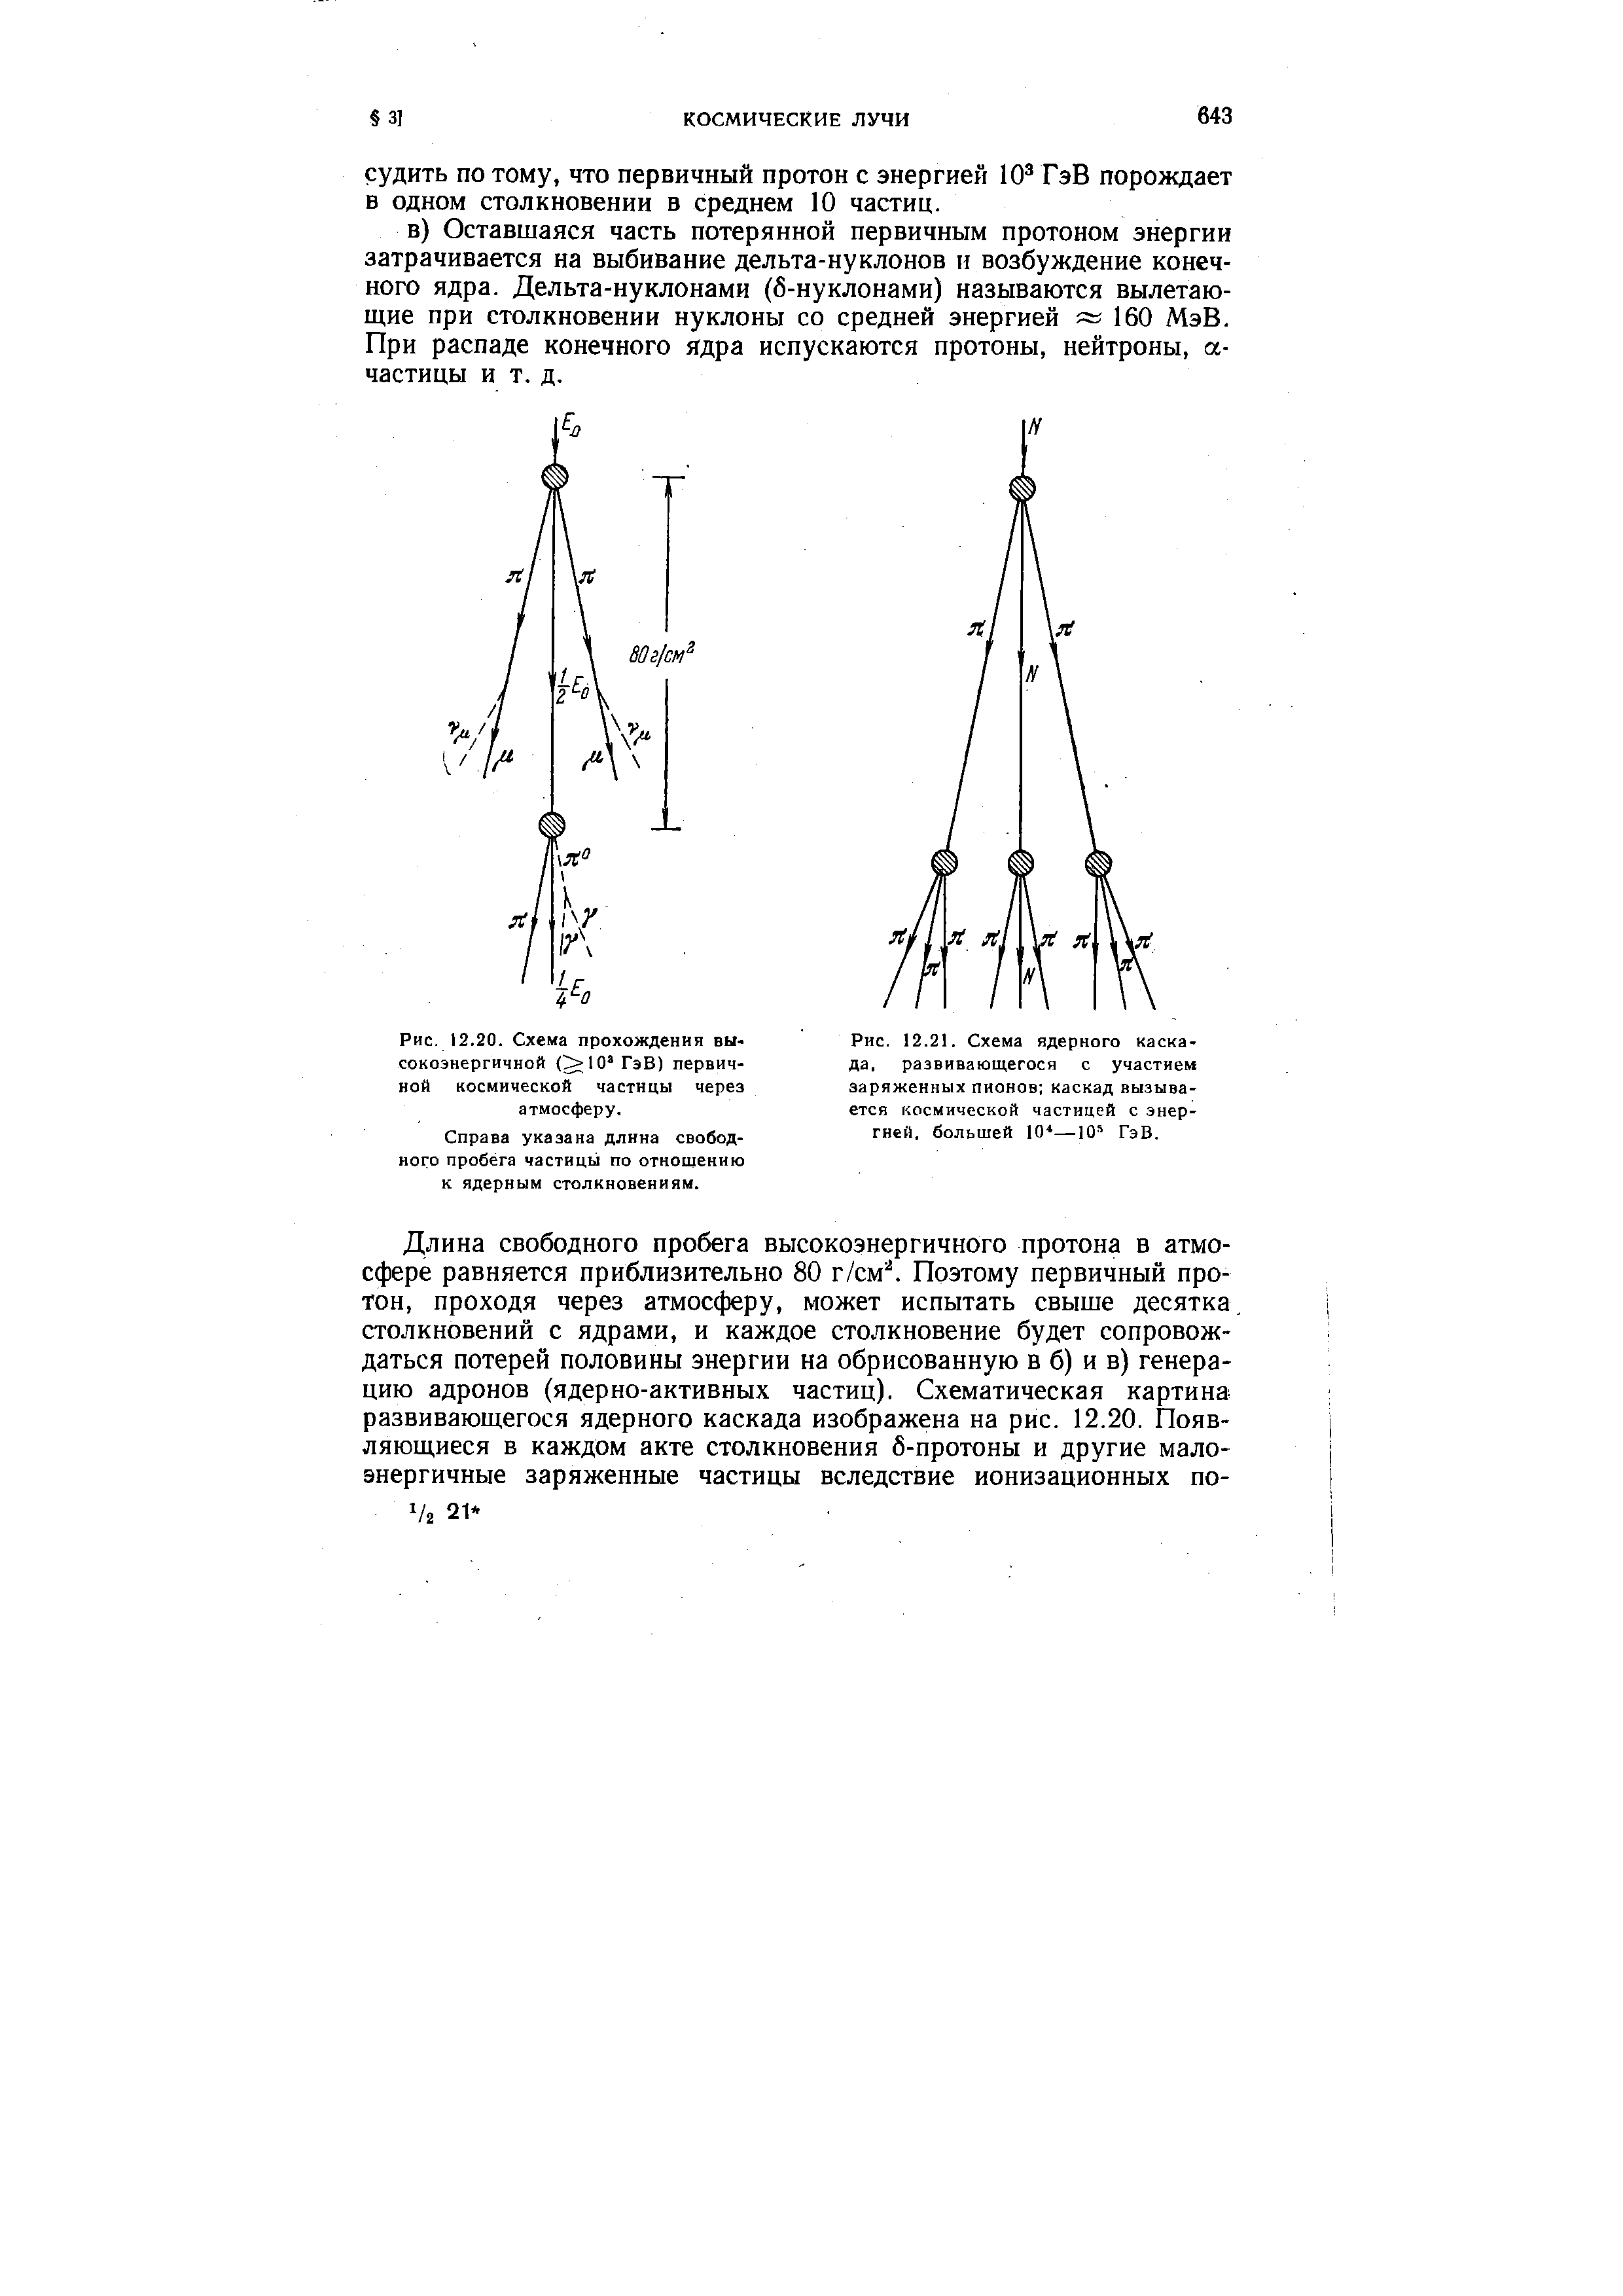 Рис. 12.20. Схема прохождения высокоэнергичной (>10 ГэВ) первичной космической частицы через атмосферу.
